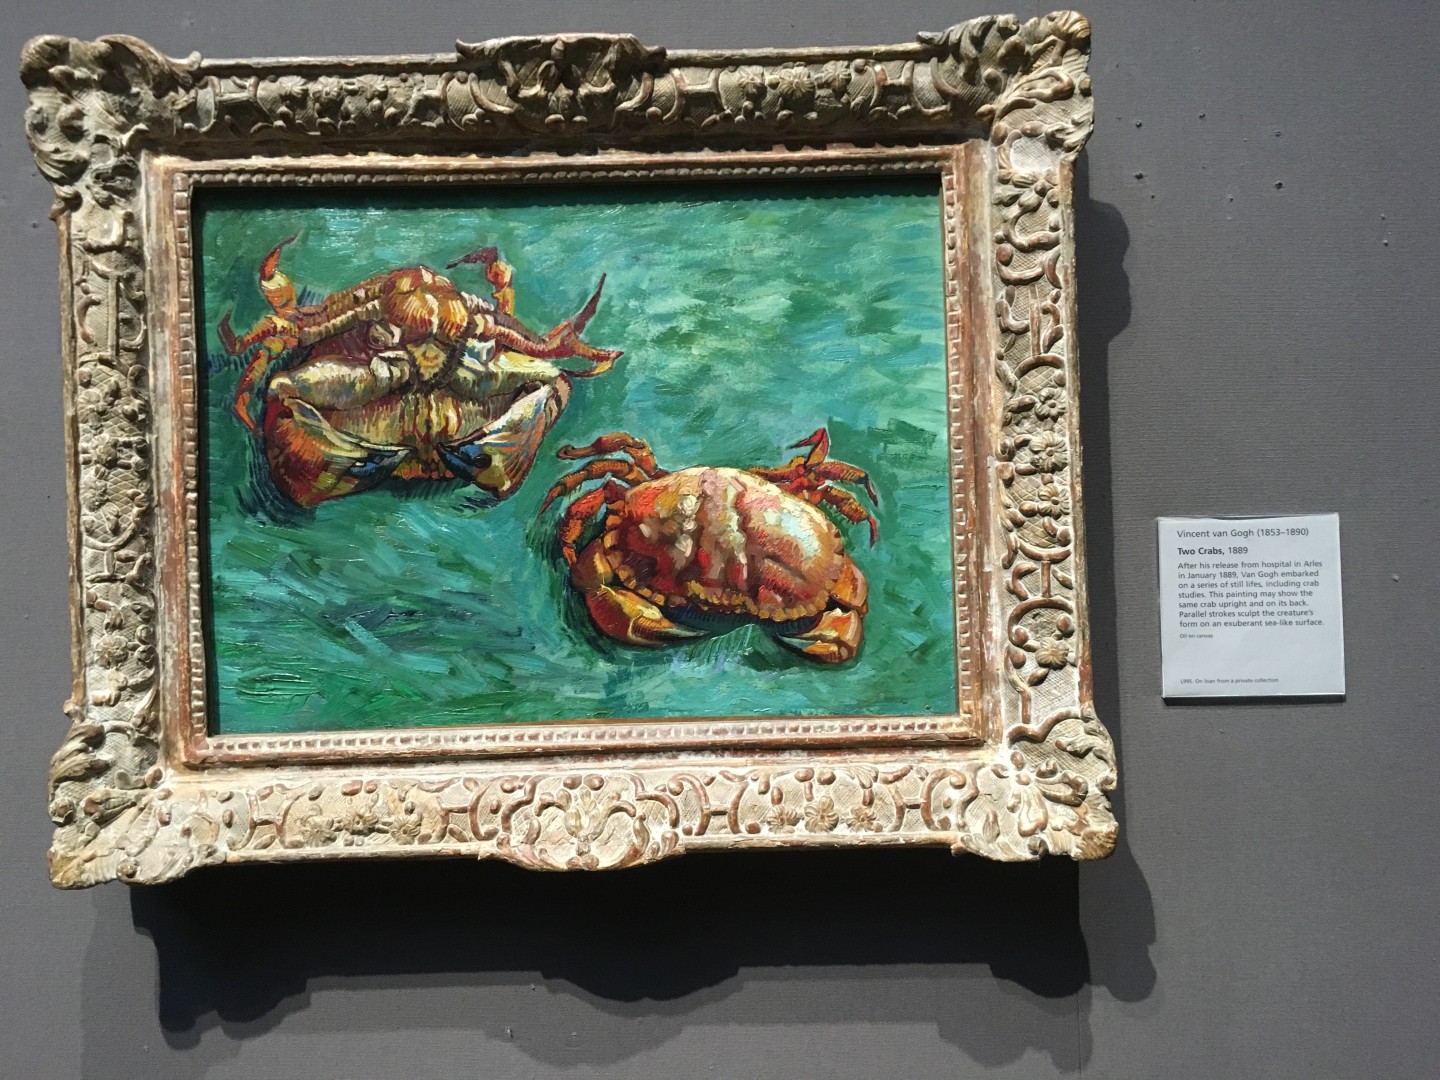 Vincent van Gogh - Two Crabs